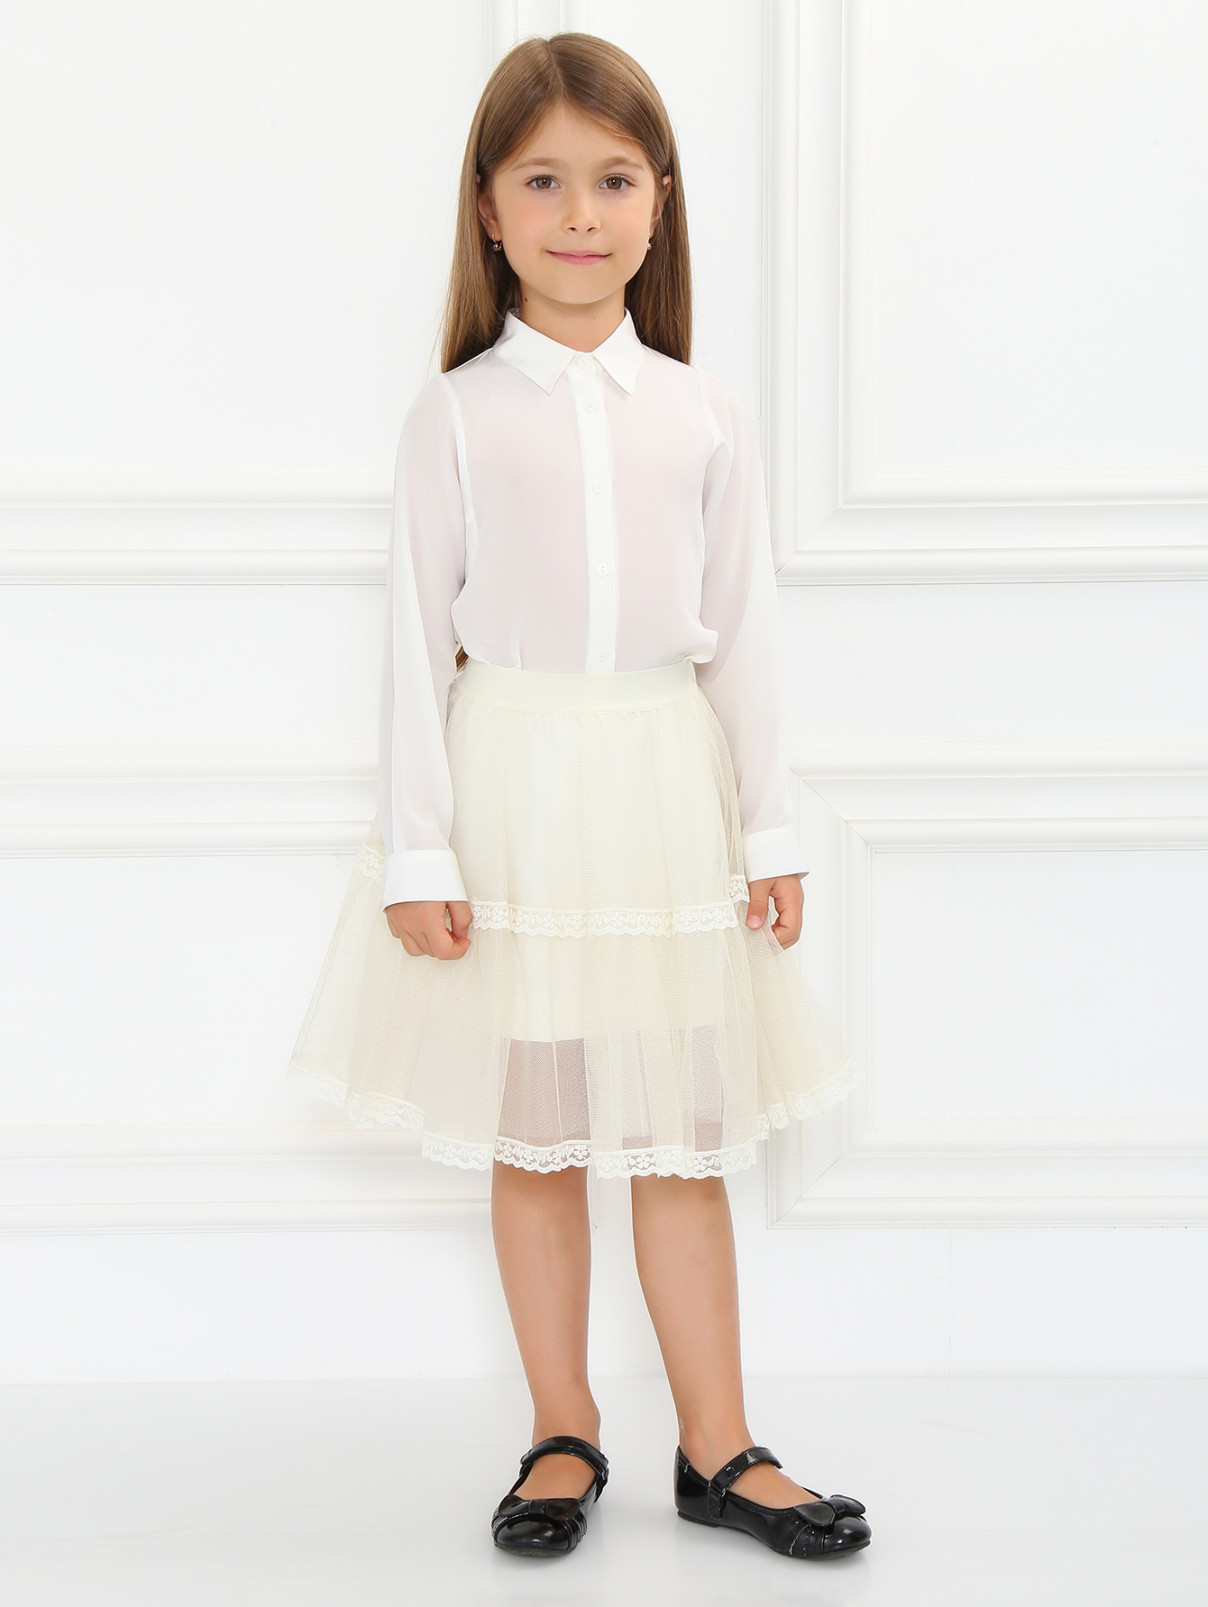 Блуза из шелка MiMiSol  –  Модель Общий вид  – Цвет:  Белый